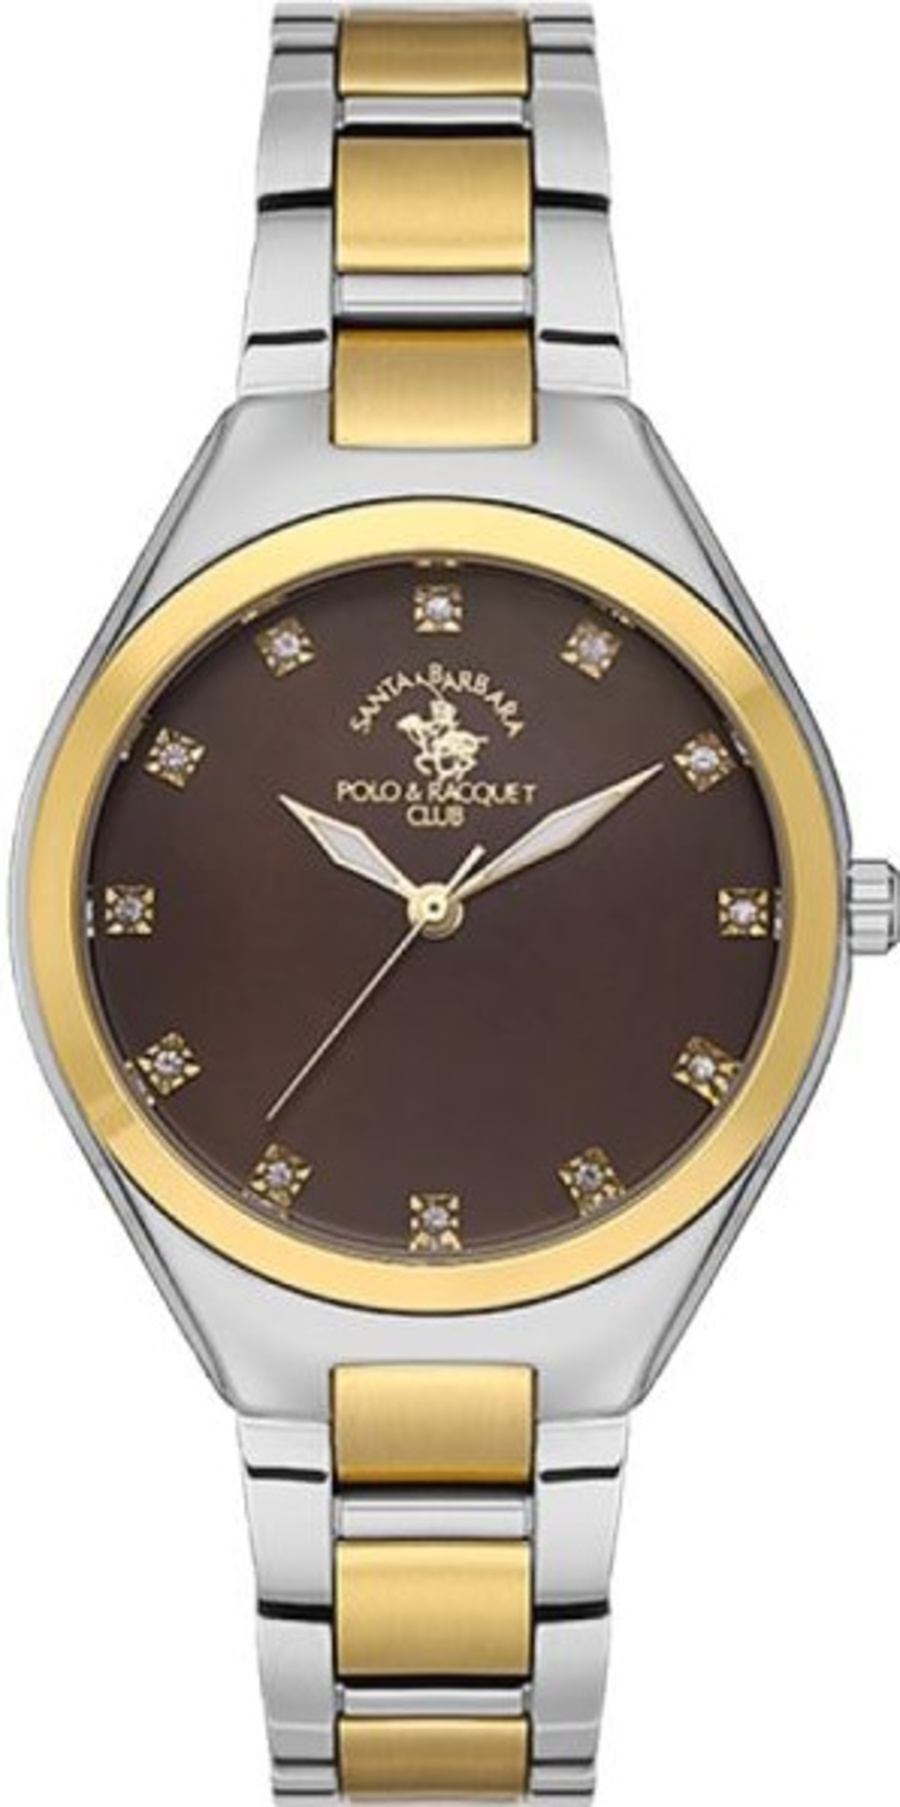 Наручные часы женские Santa Barbara Polo & Racquet Club SB.1.10487-4